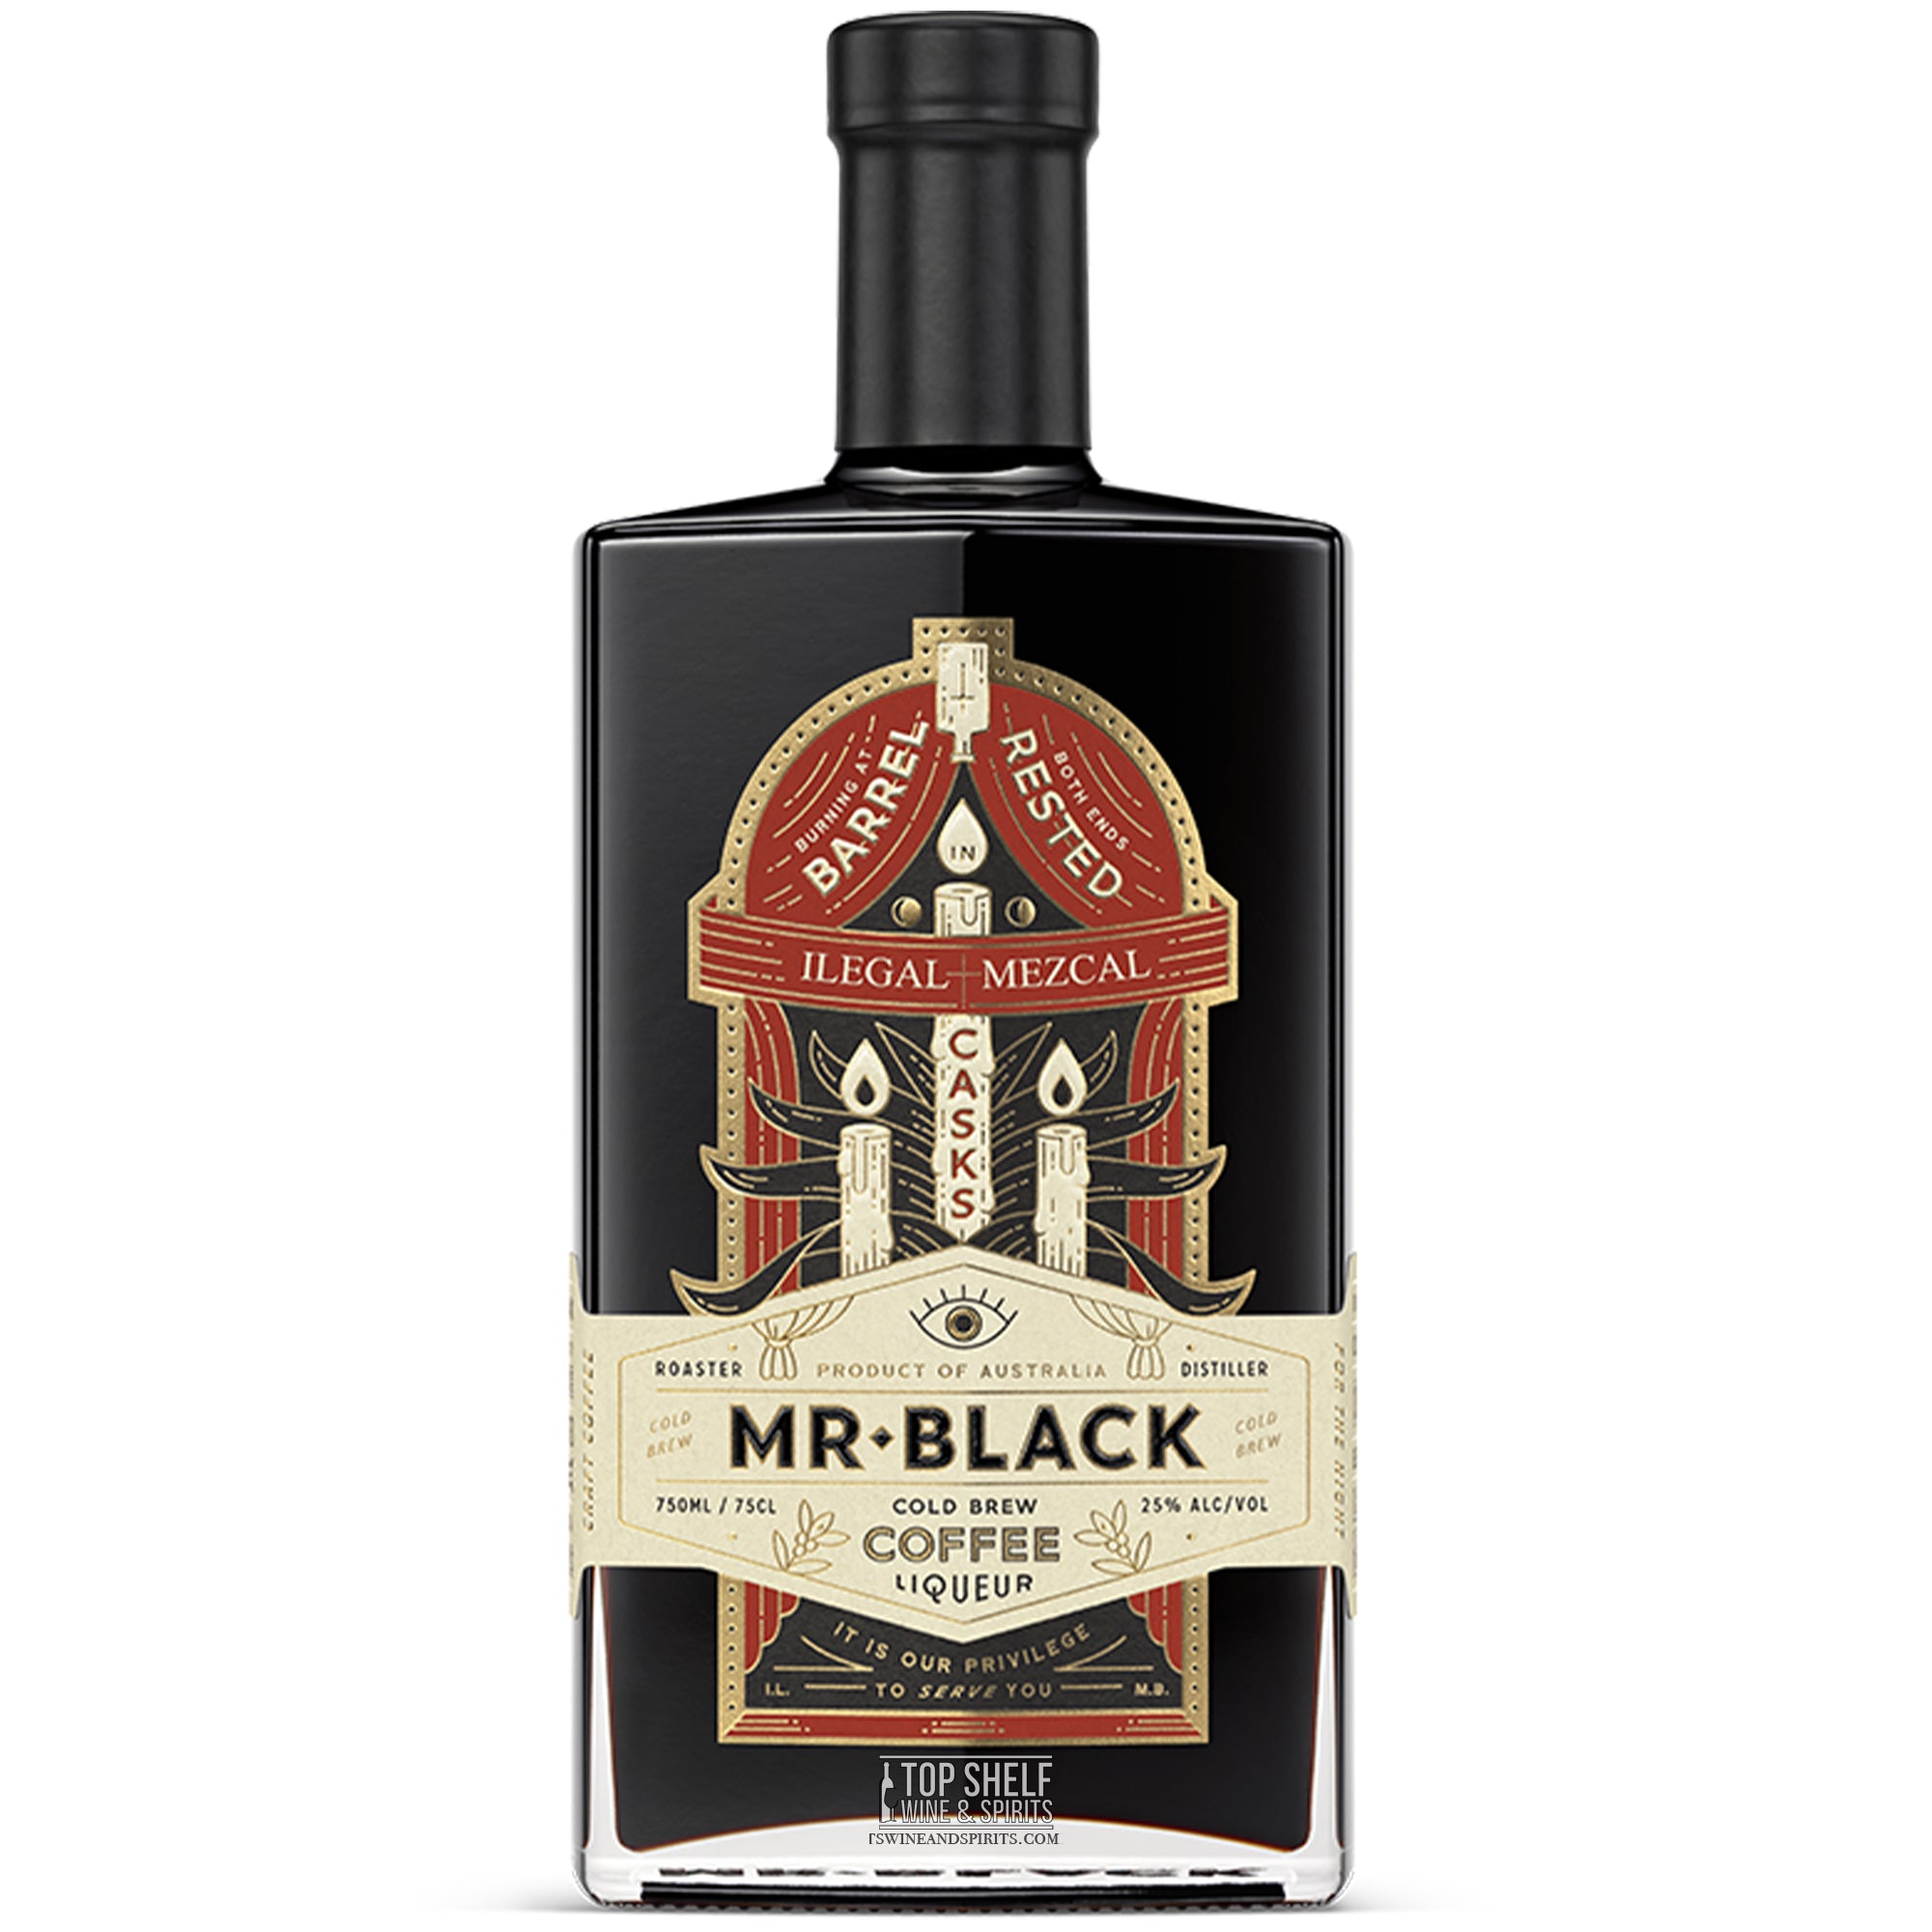 Mr. Black Ilegal Mezcal Coffee Liqueur